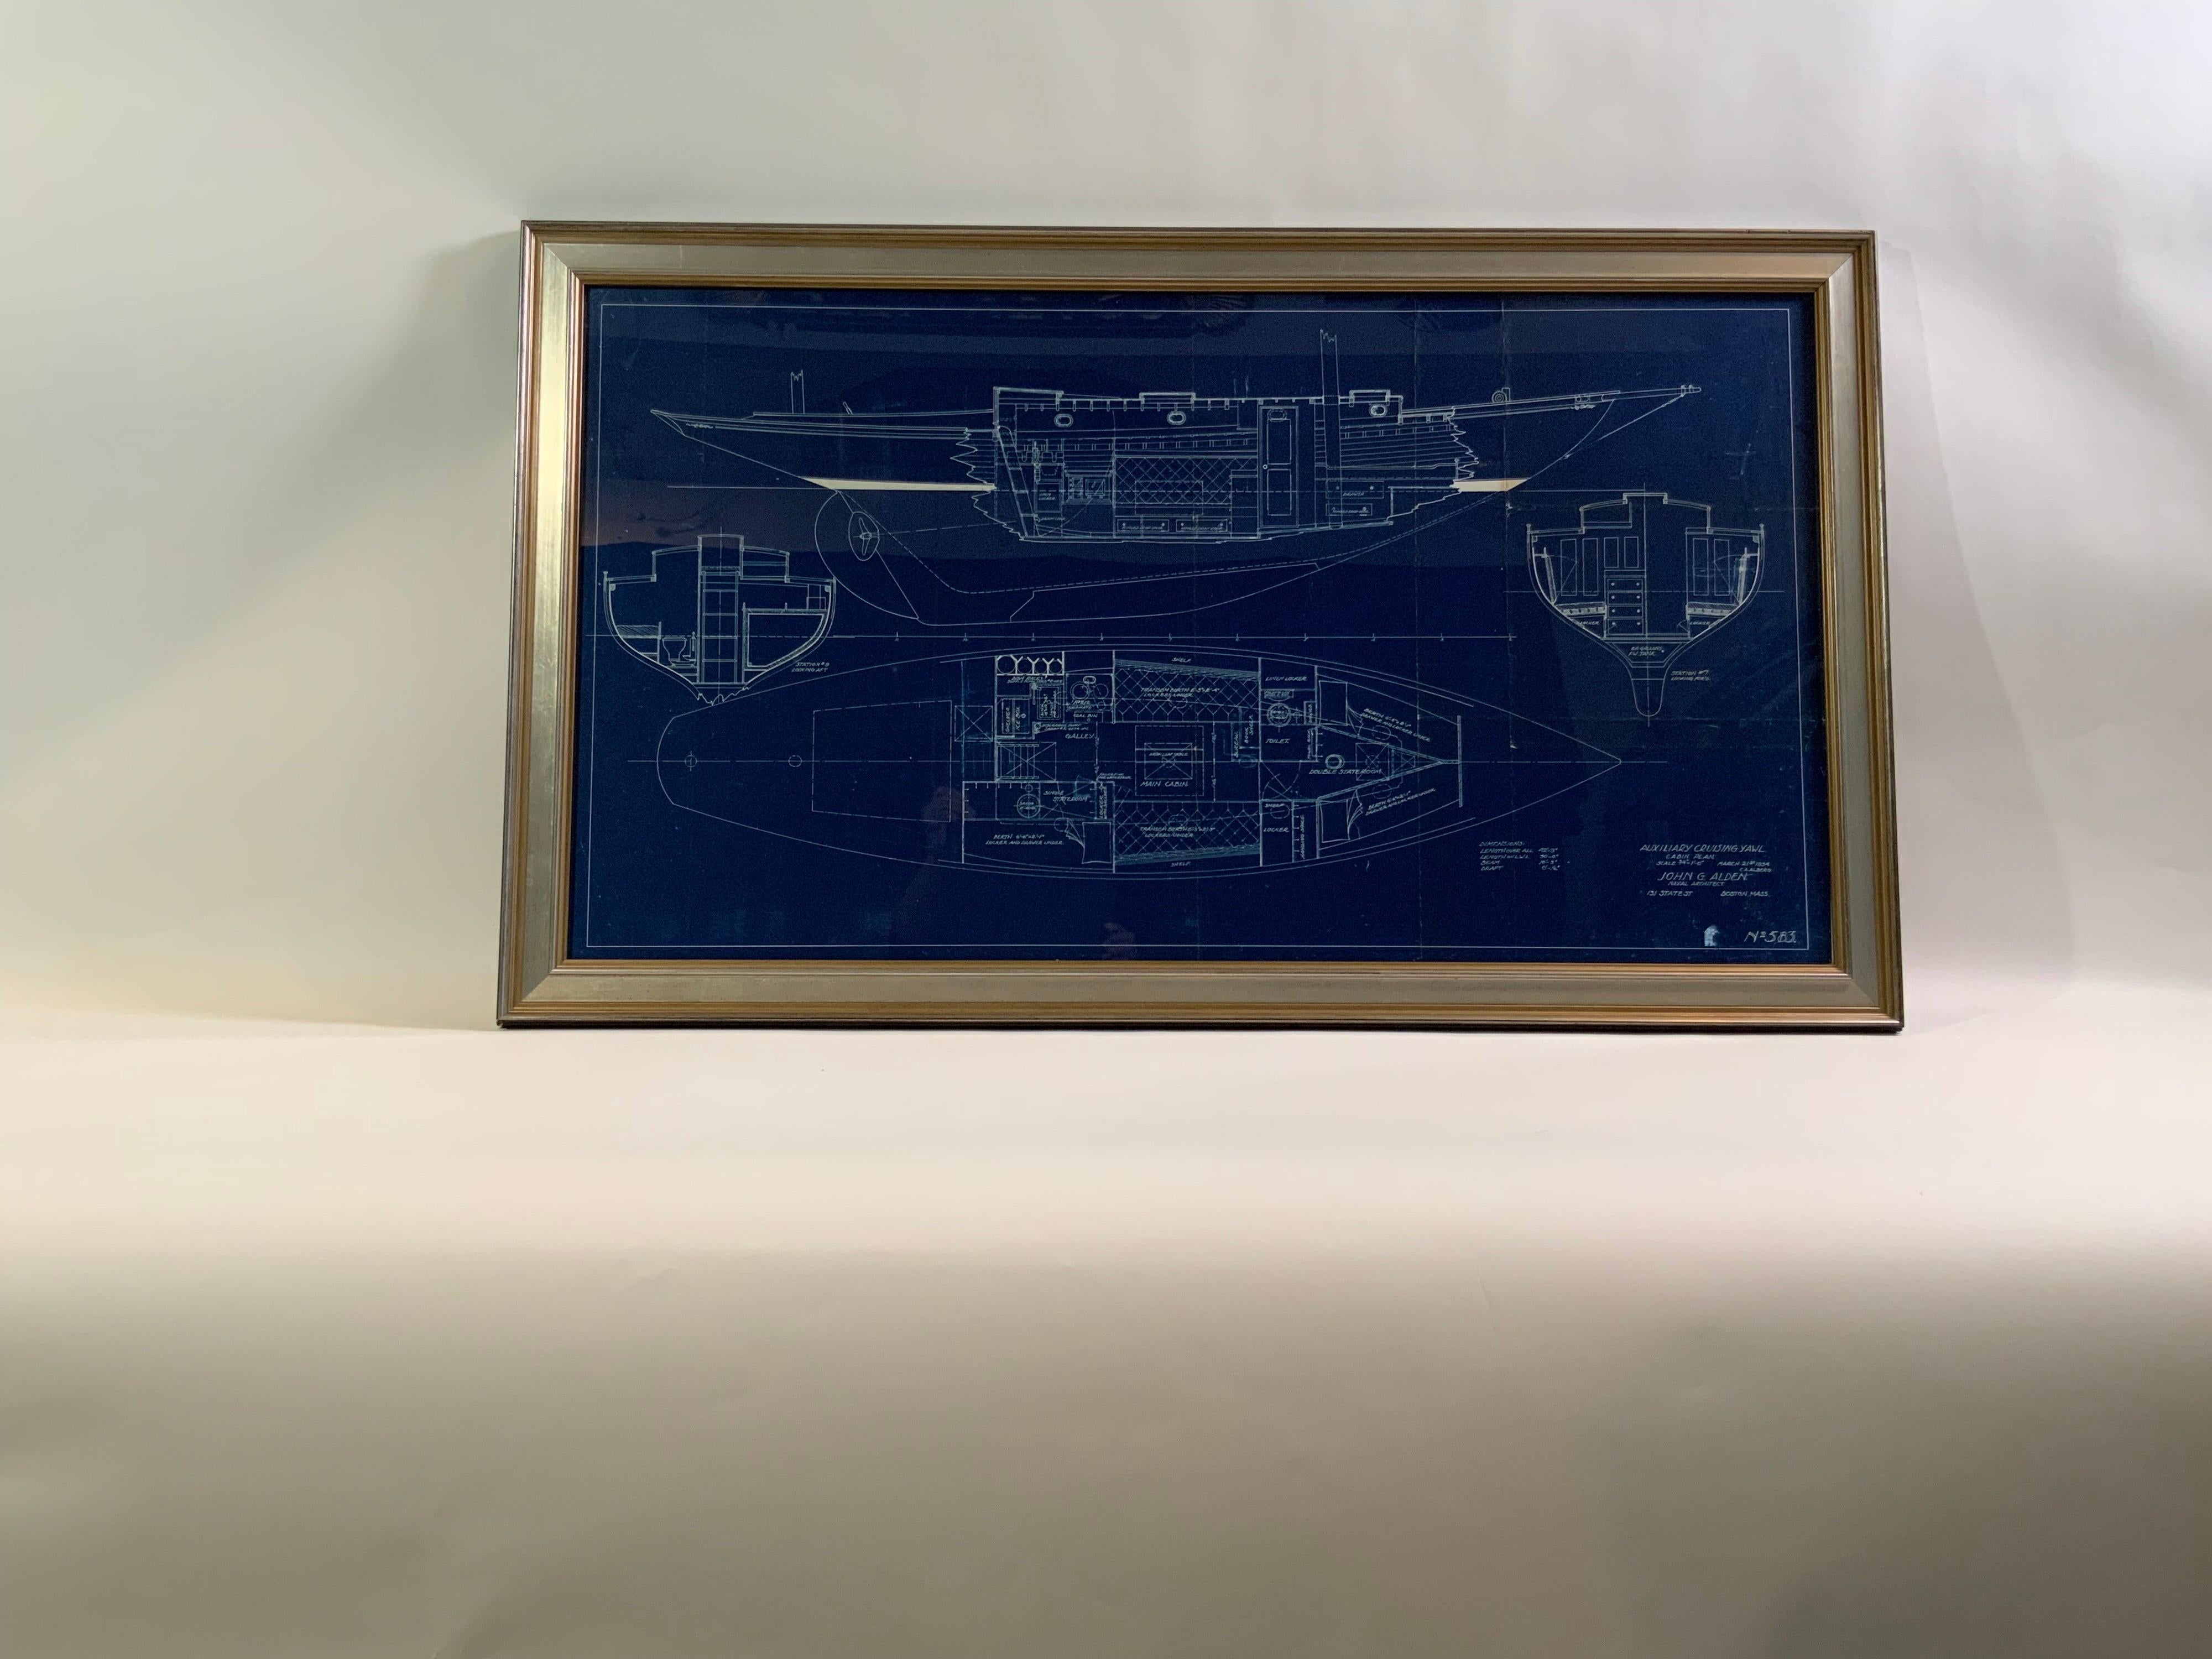 Exceptionnel et étonnant plan original de yacht de John G Alden de Boston. Le panneau de légende indique le plan de cabine 